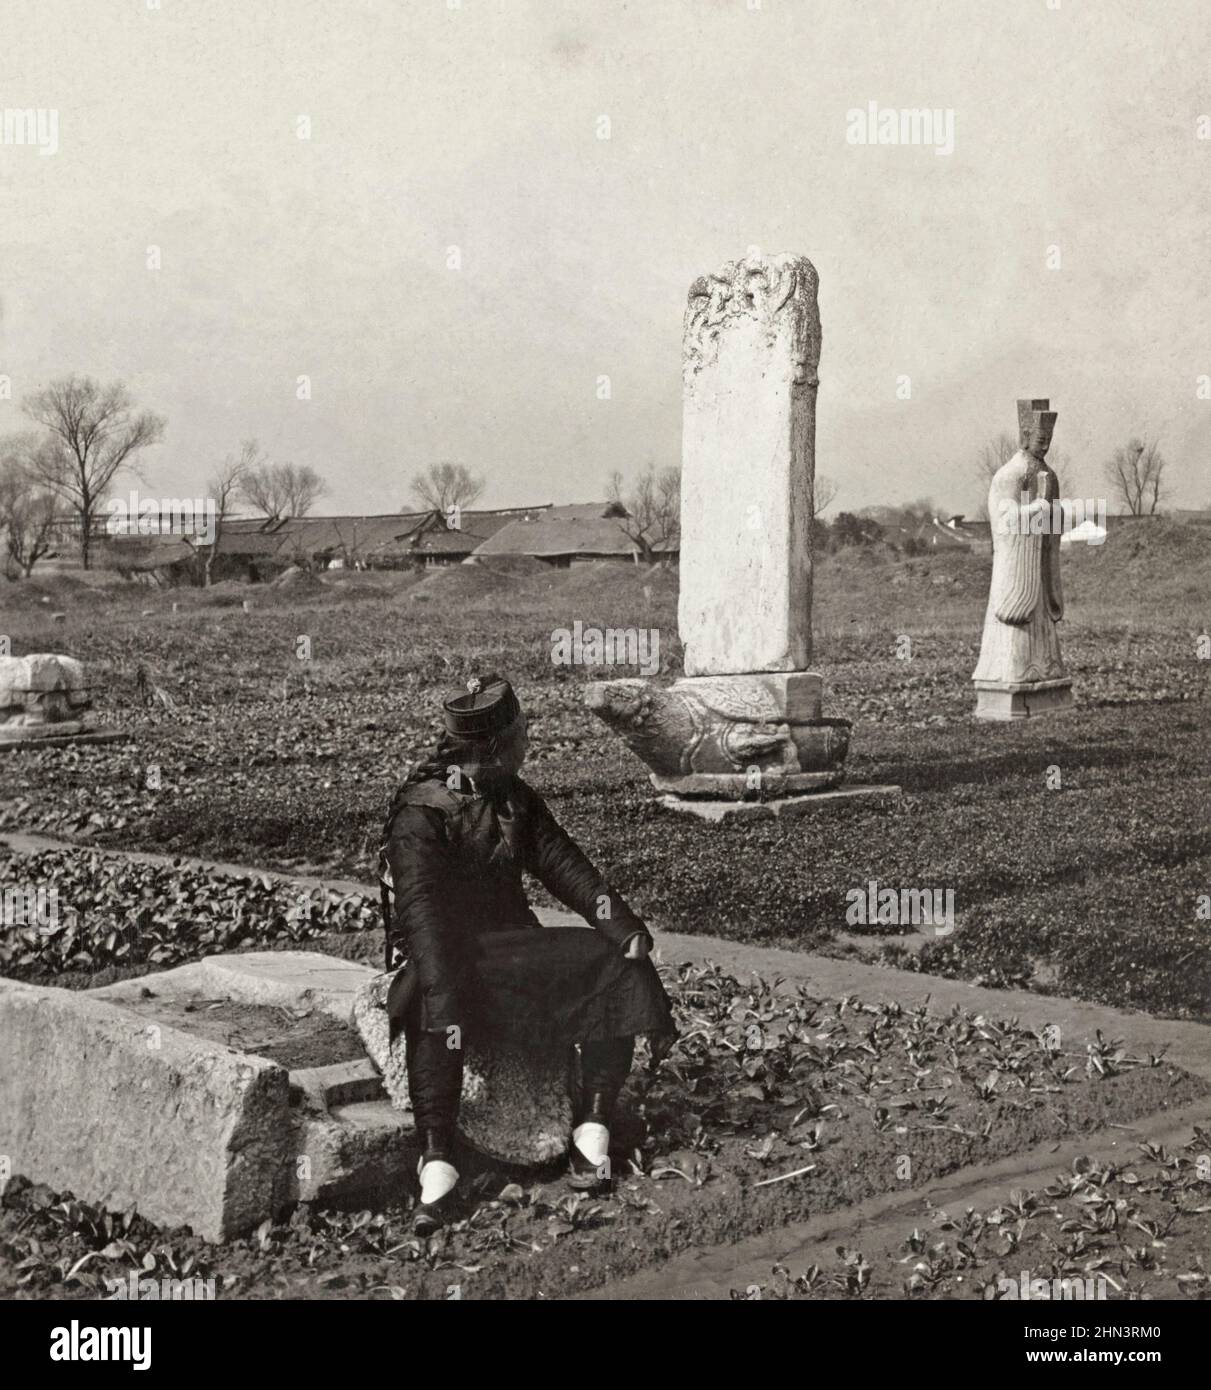 Photo d'époque de l'homme chinois en robe traditionnelle et avec file d'attente assise dans le potager dans un cimetière de la dynastie Ming. Chine du Nord. 1906 Banque D'Images